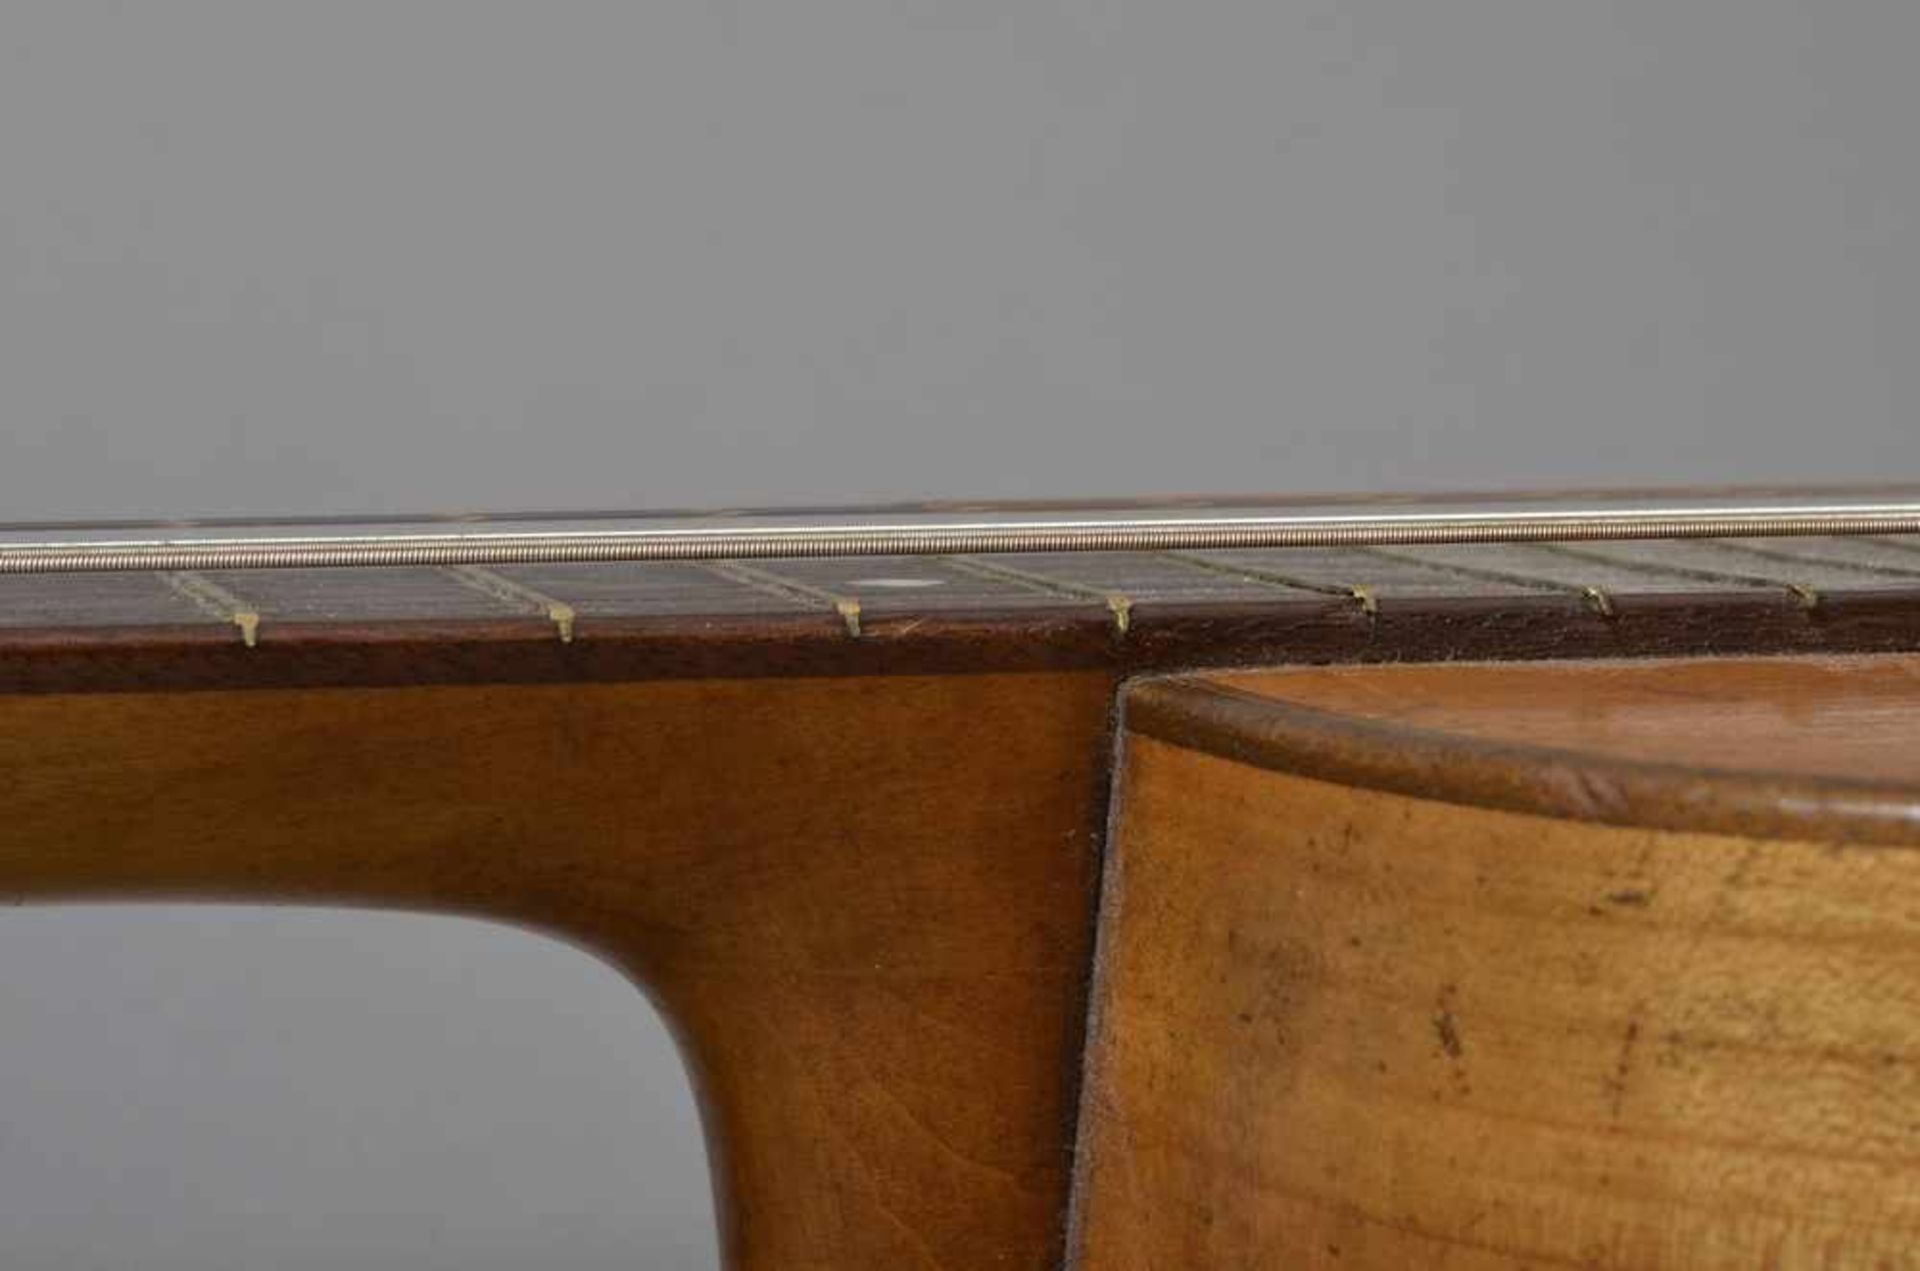 Historische Gitarre, Mensur 62cm, Gesamtlänge 93cm, Saitenhöhe 4mm, ca. 100 Jahre alt, spielbar - Image 8 of 8